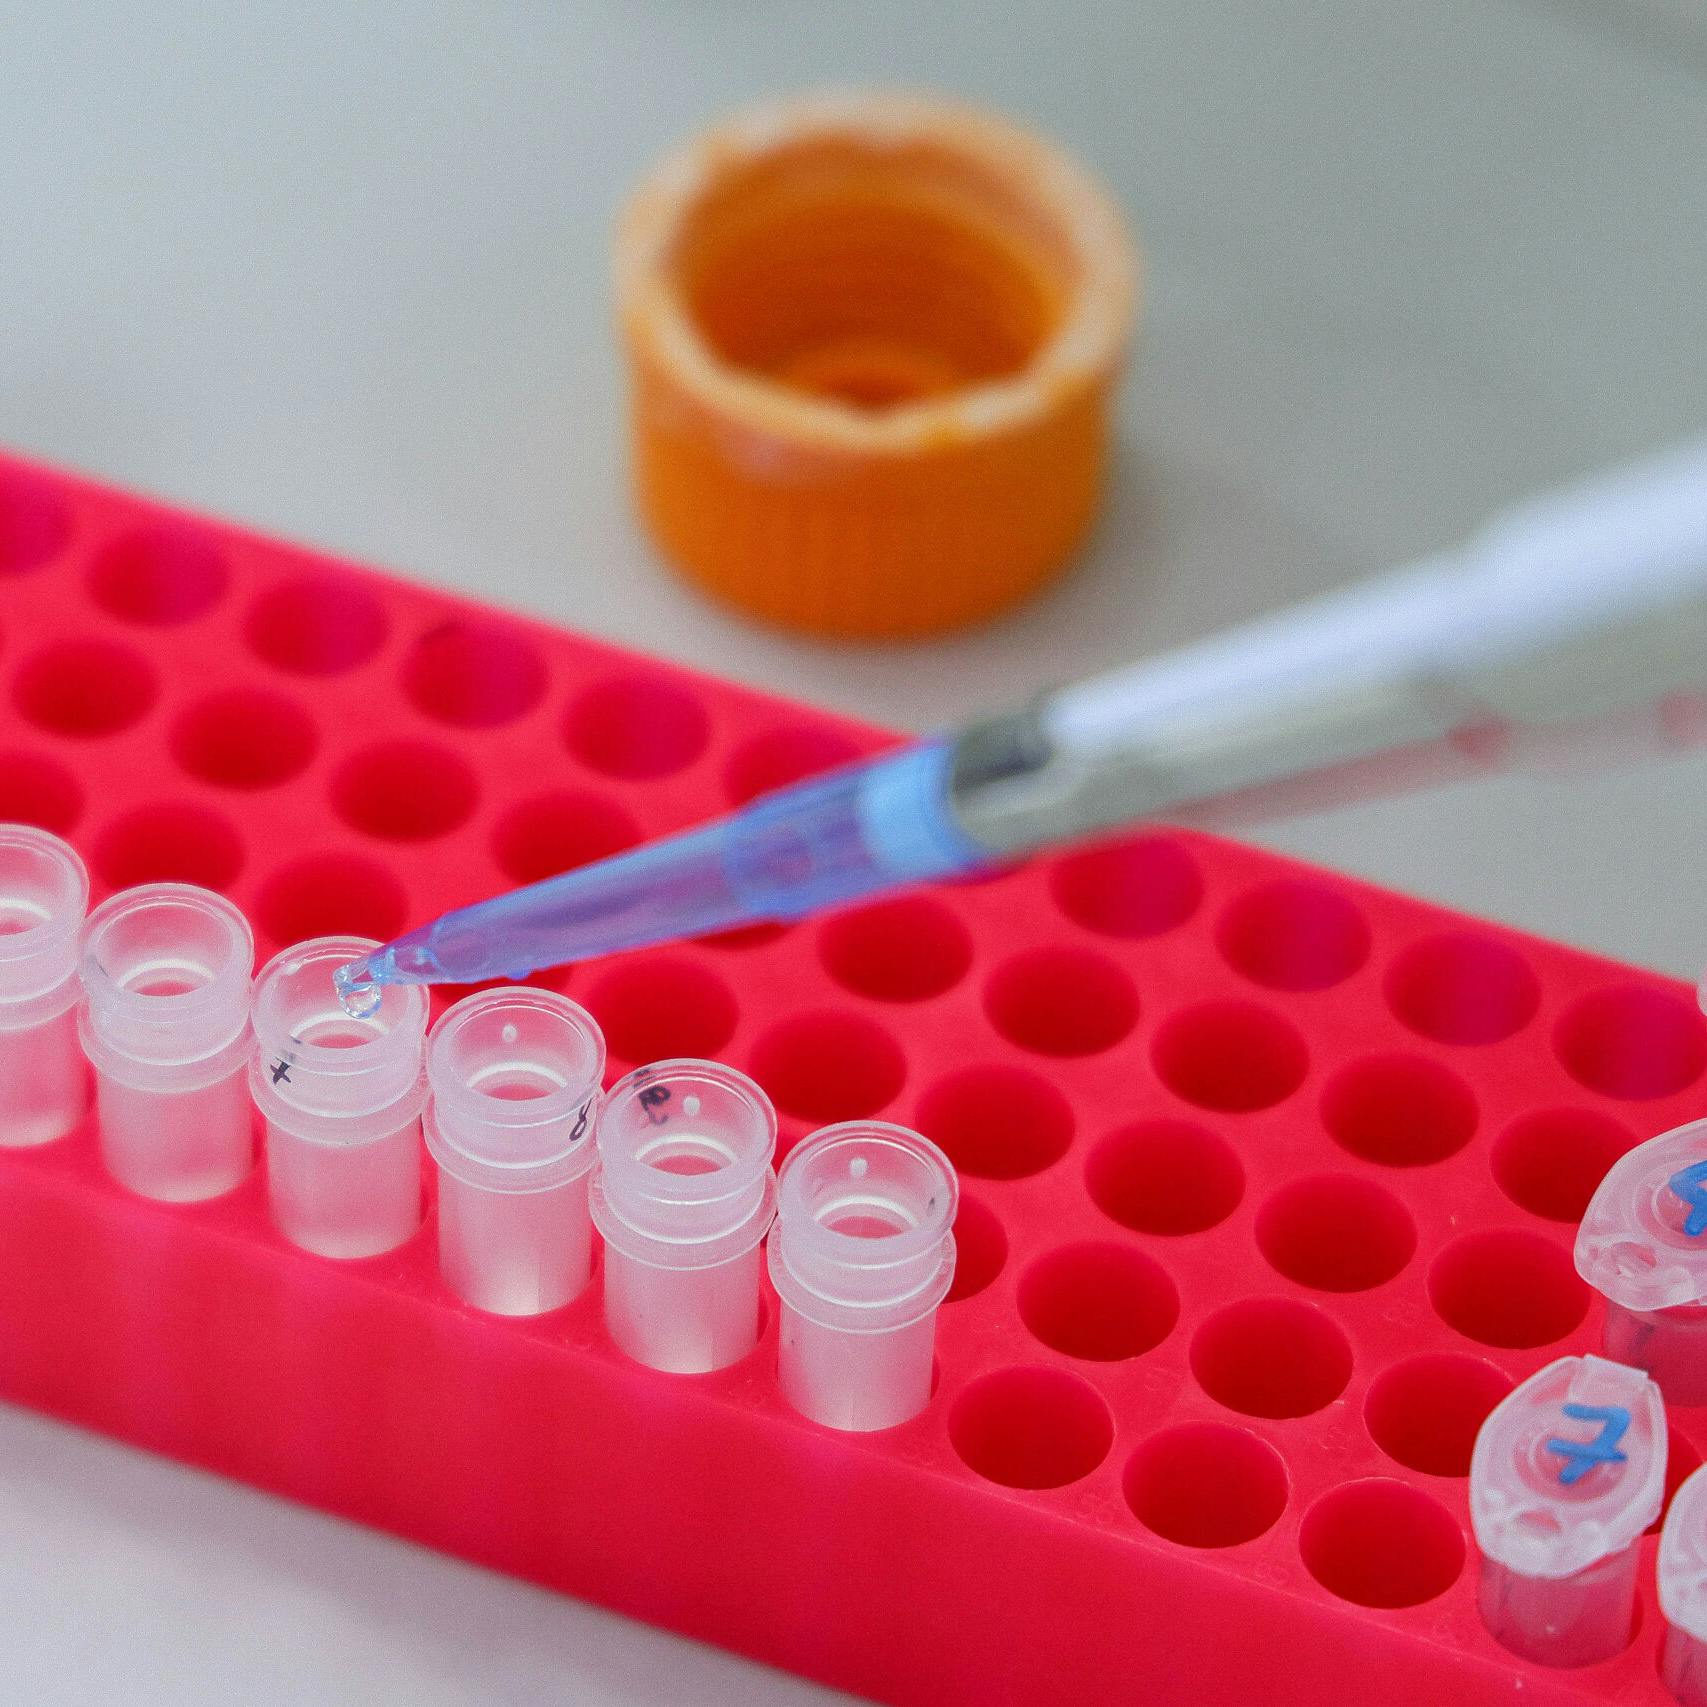 Nieuwe methodes DNA-onderzoek zorgen voor meer opgeloste zaken